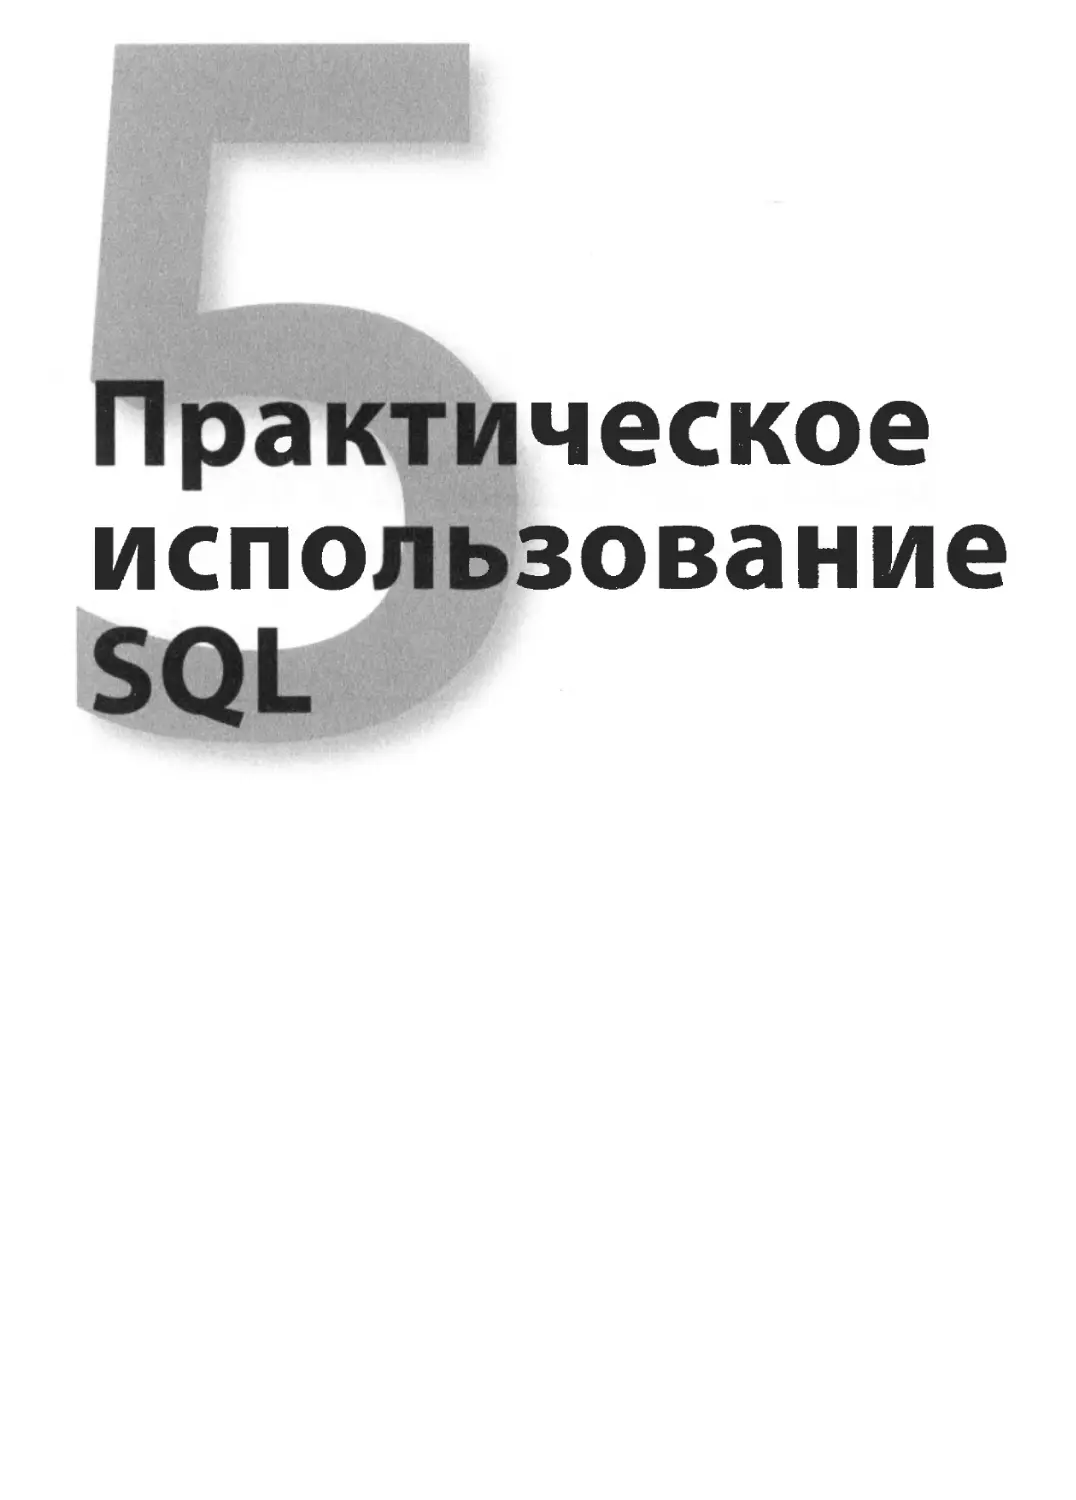 V. Практическое использование SQL